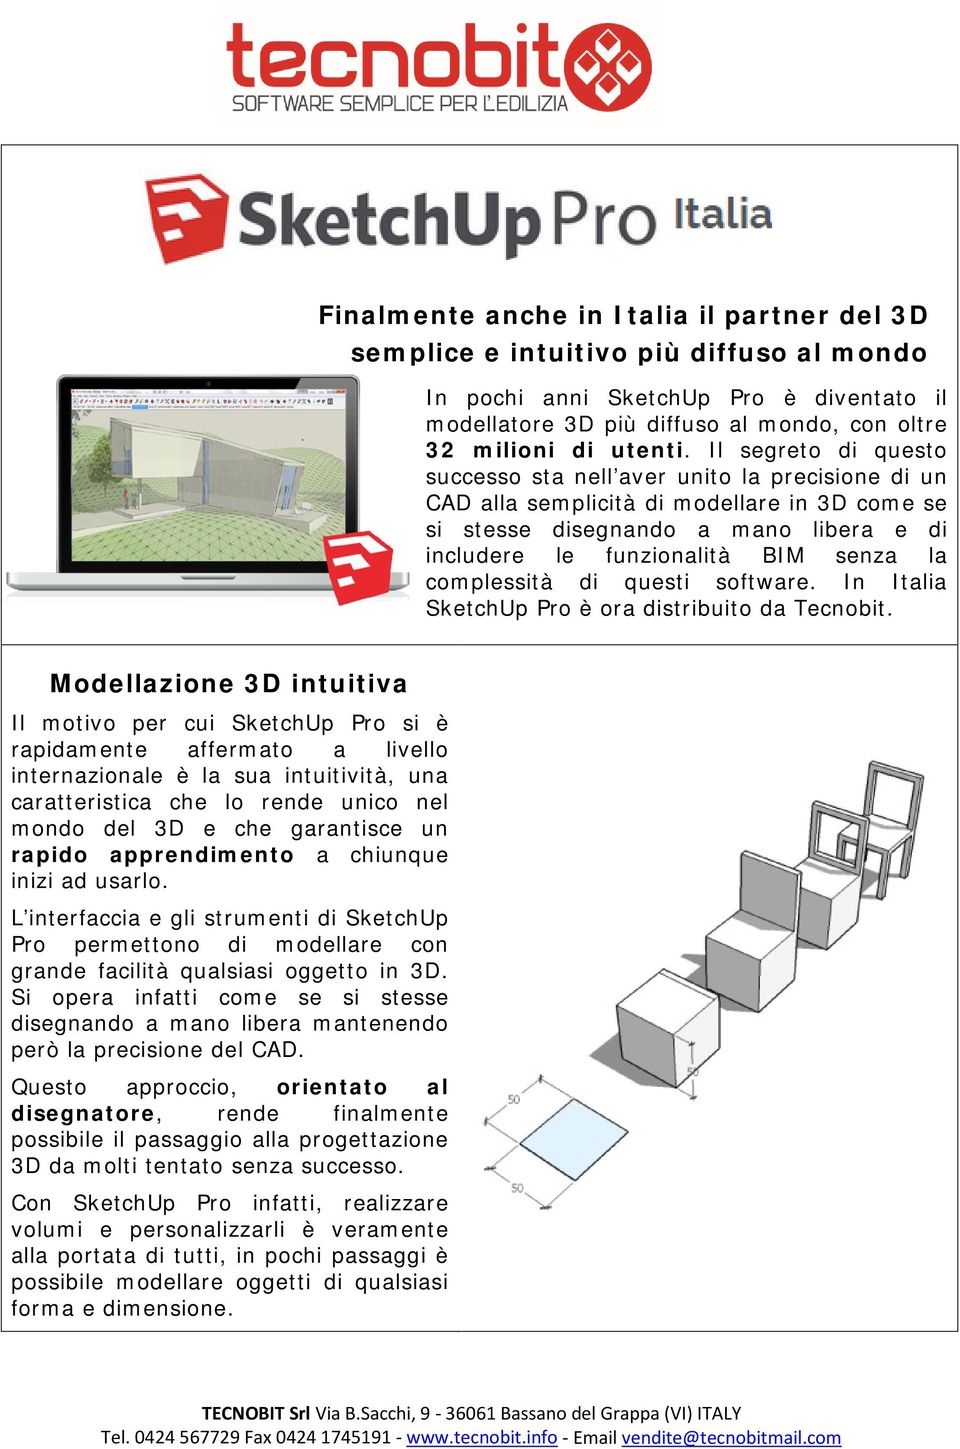 complessità di questi software. In Italia SketchUp Pro è ora distribuito da Tecnobit.